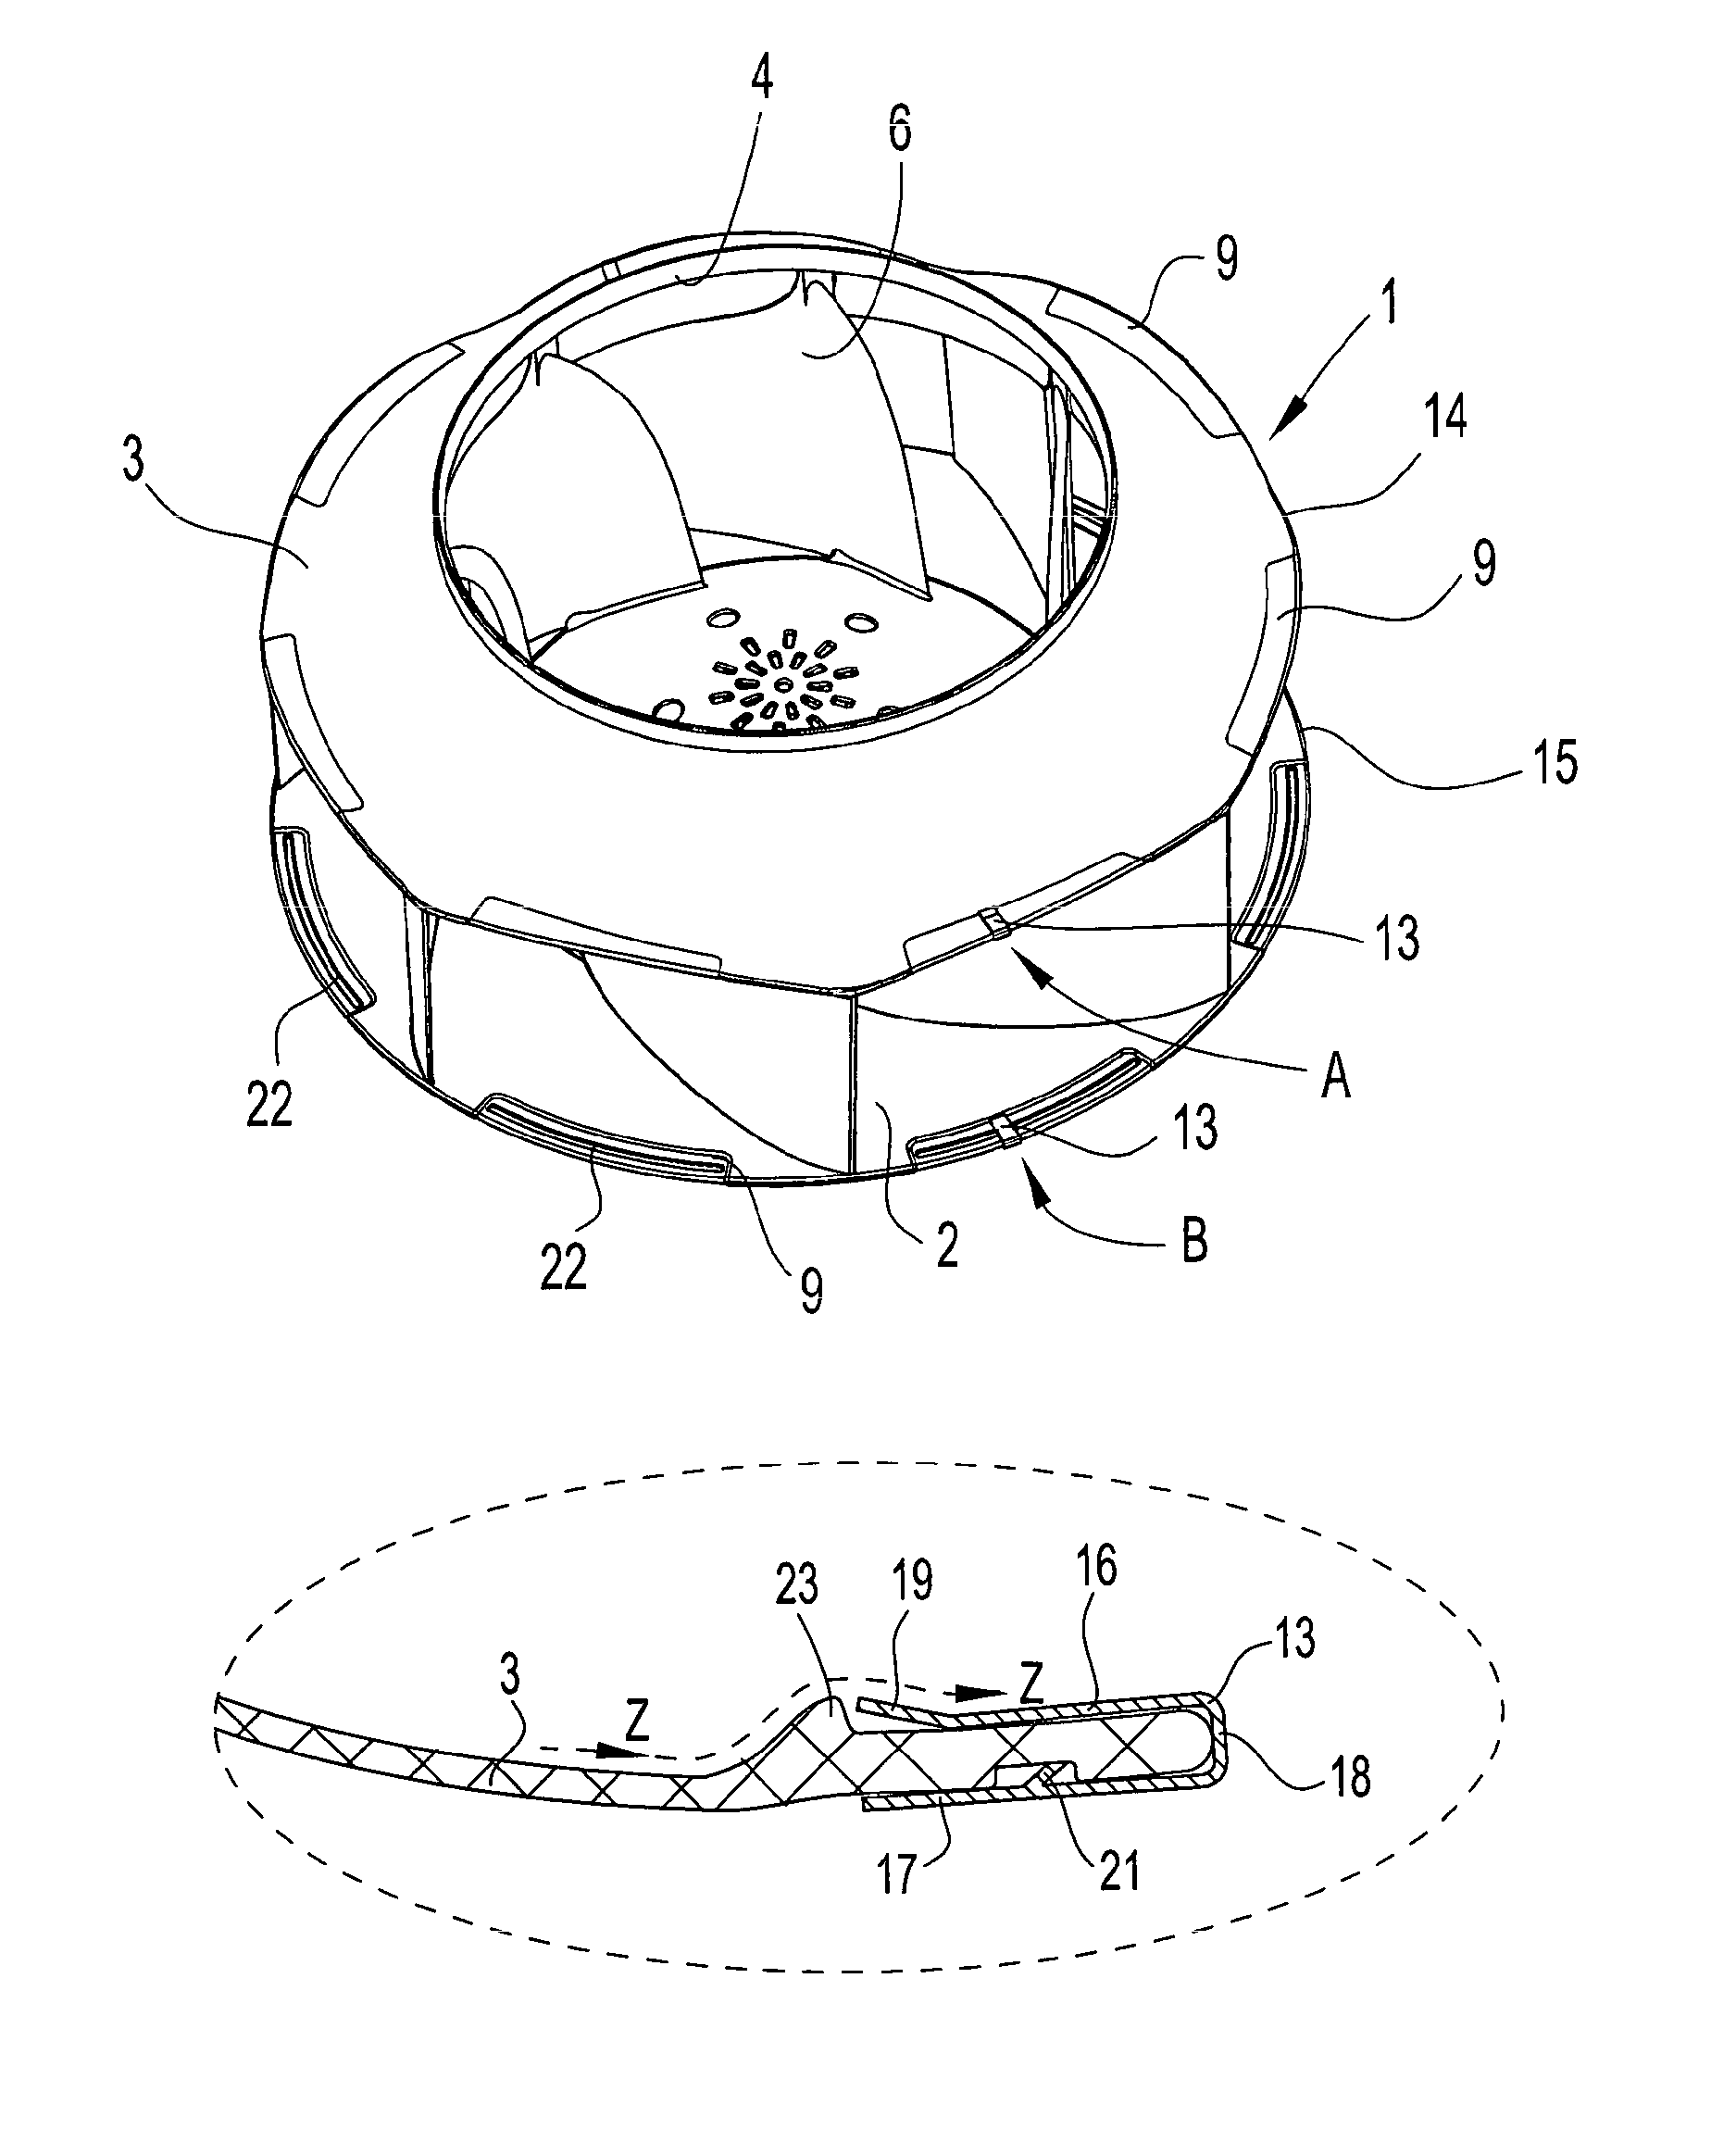 Radial fan wheel arrangement